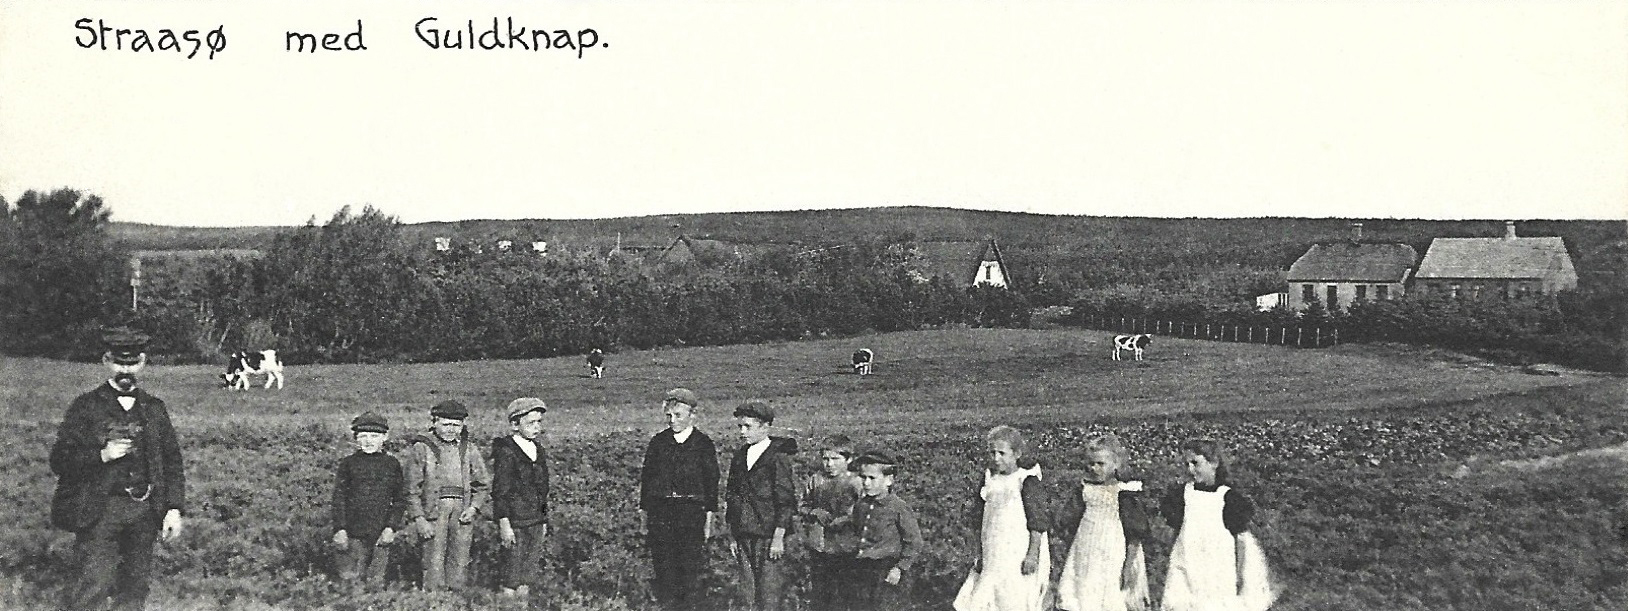 Udsigt over Stråsø -med skole og lærerbolig i baggrunden til højre. Postkortmotiv fra omkring 1910.